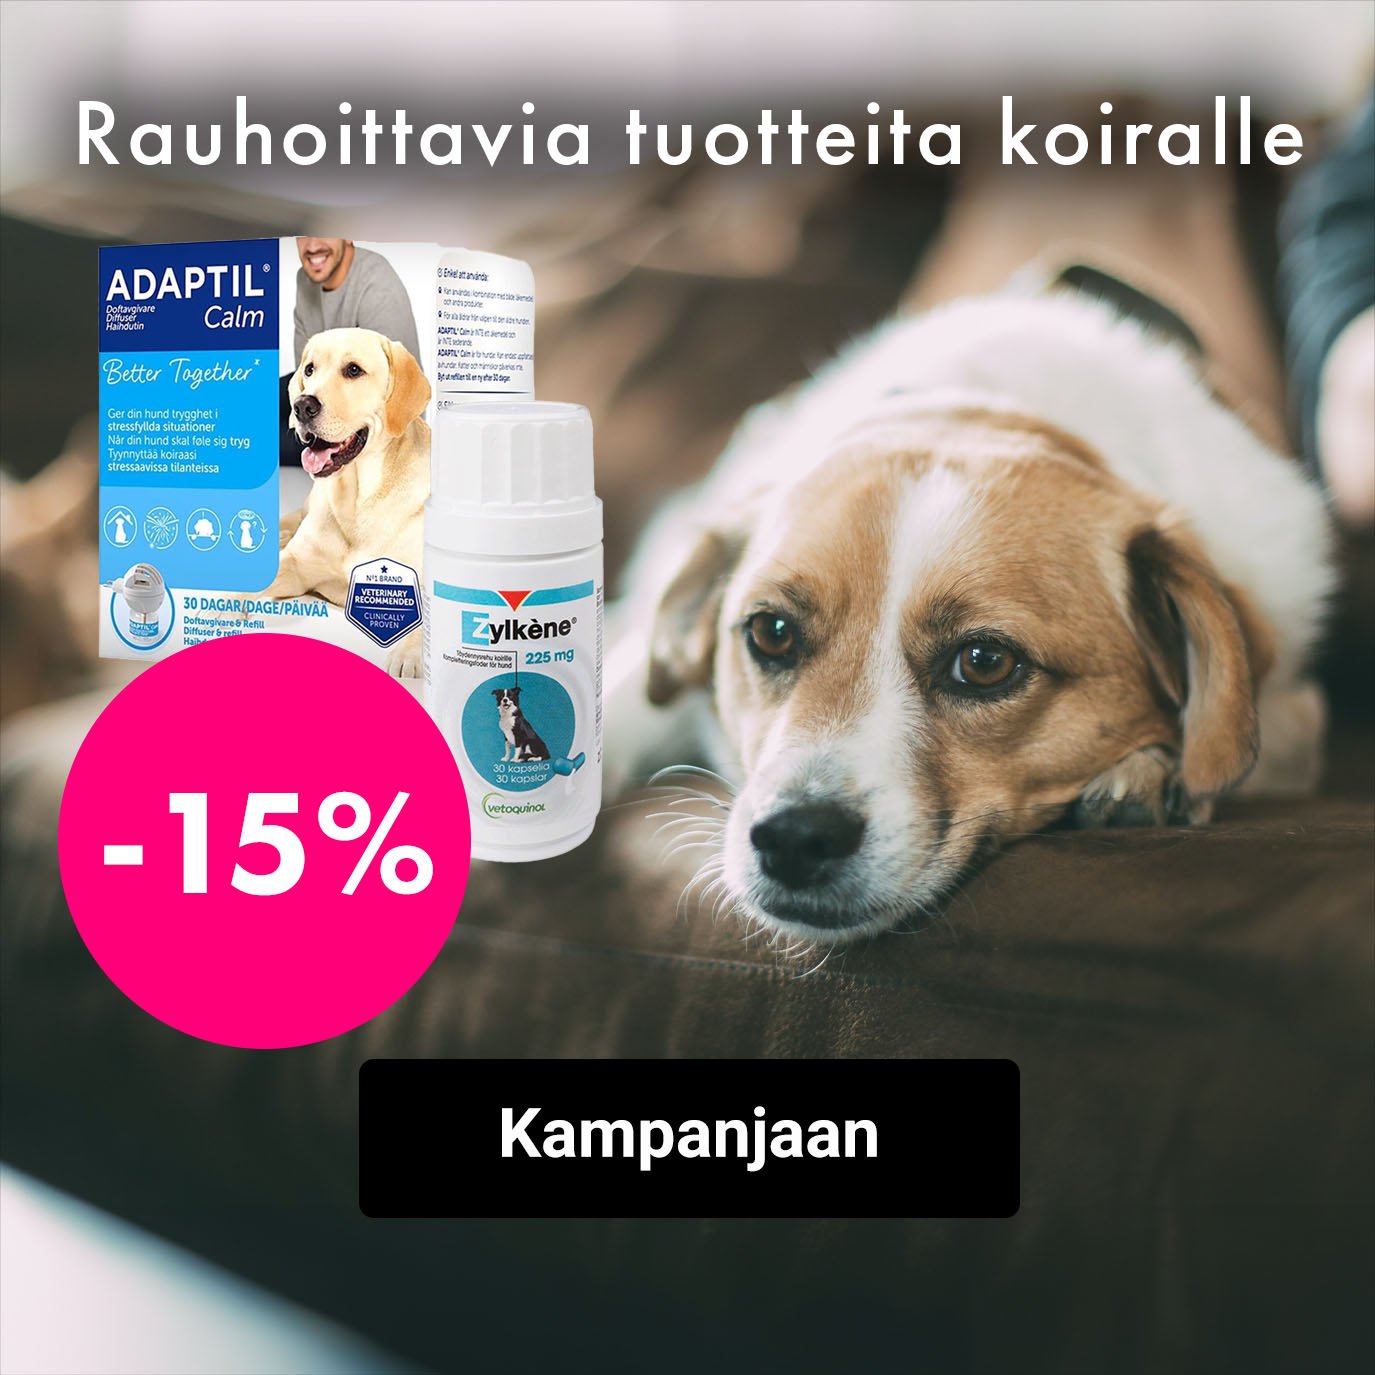 Rahoittavia tuotteita koiralle -15%